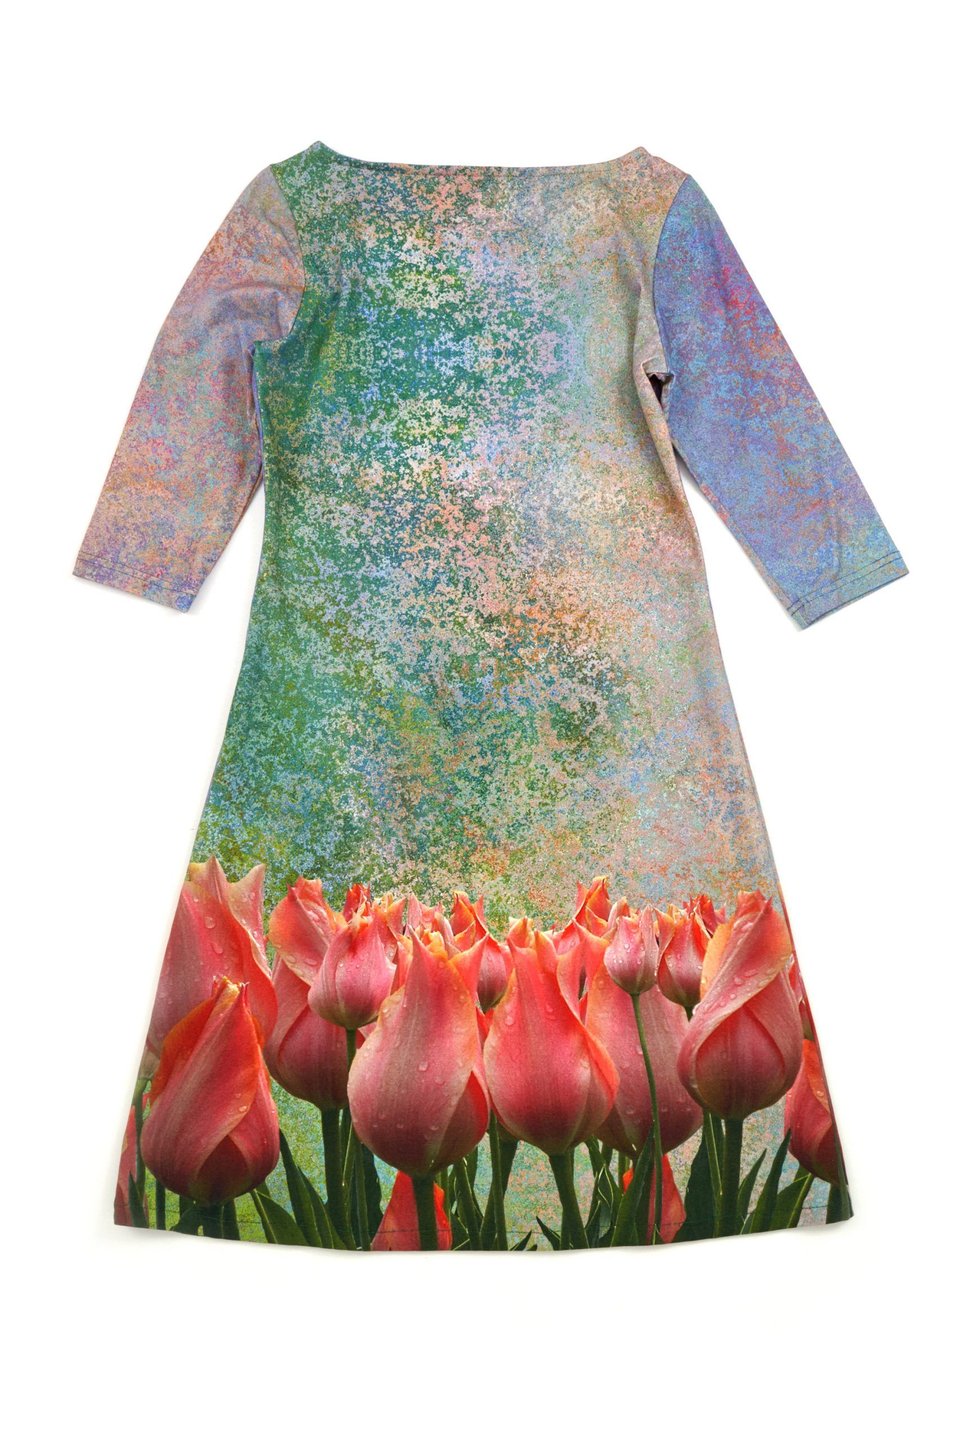 Lilac Tulip Field Dress